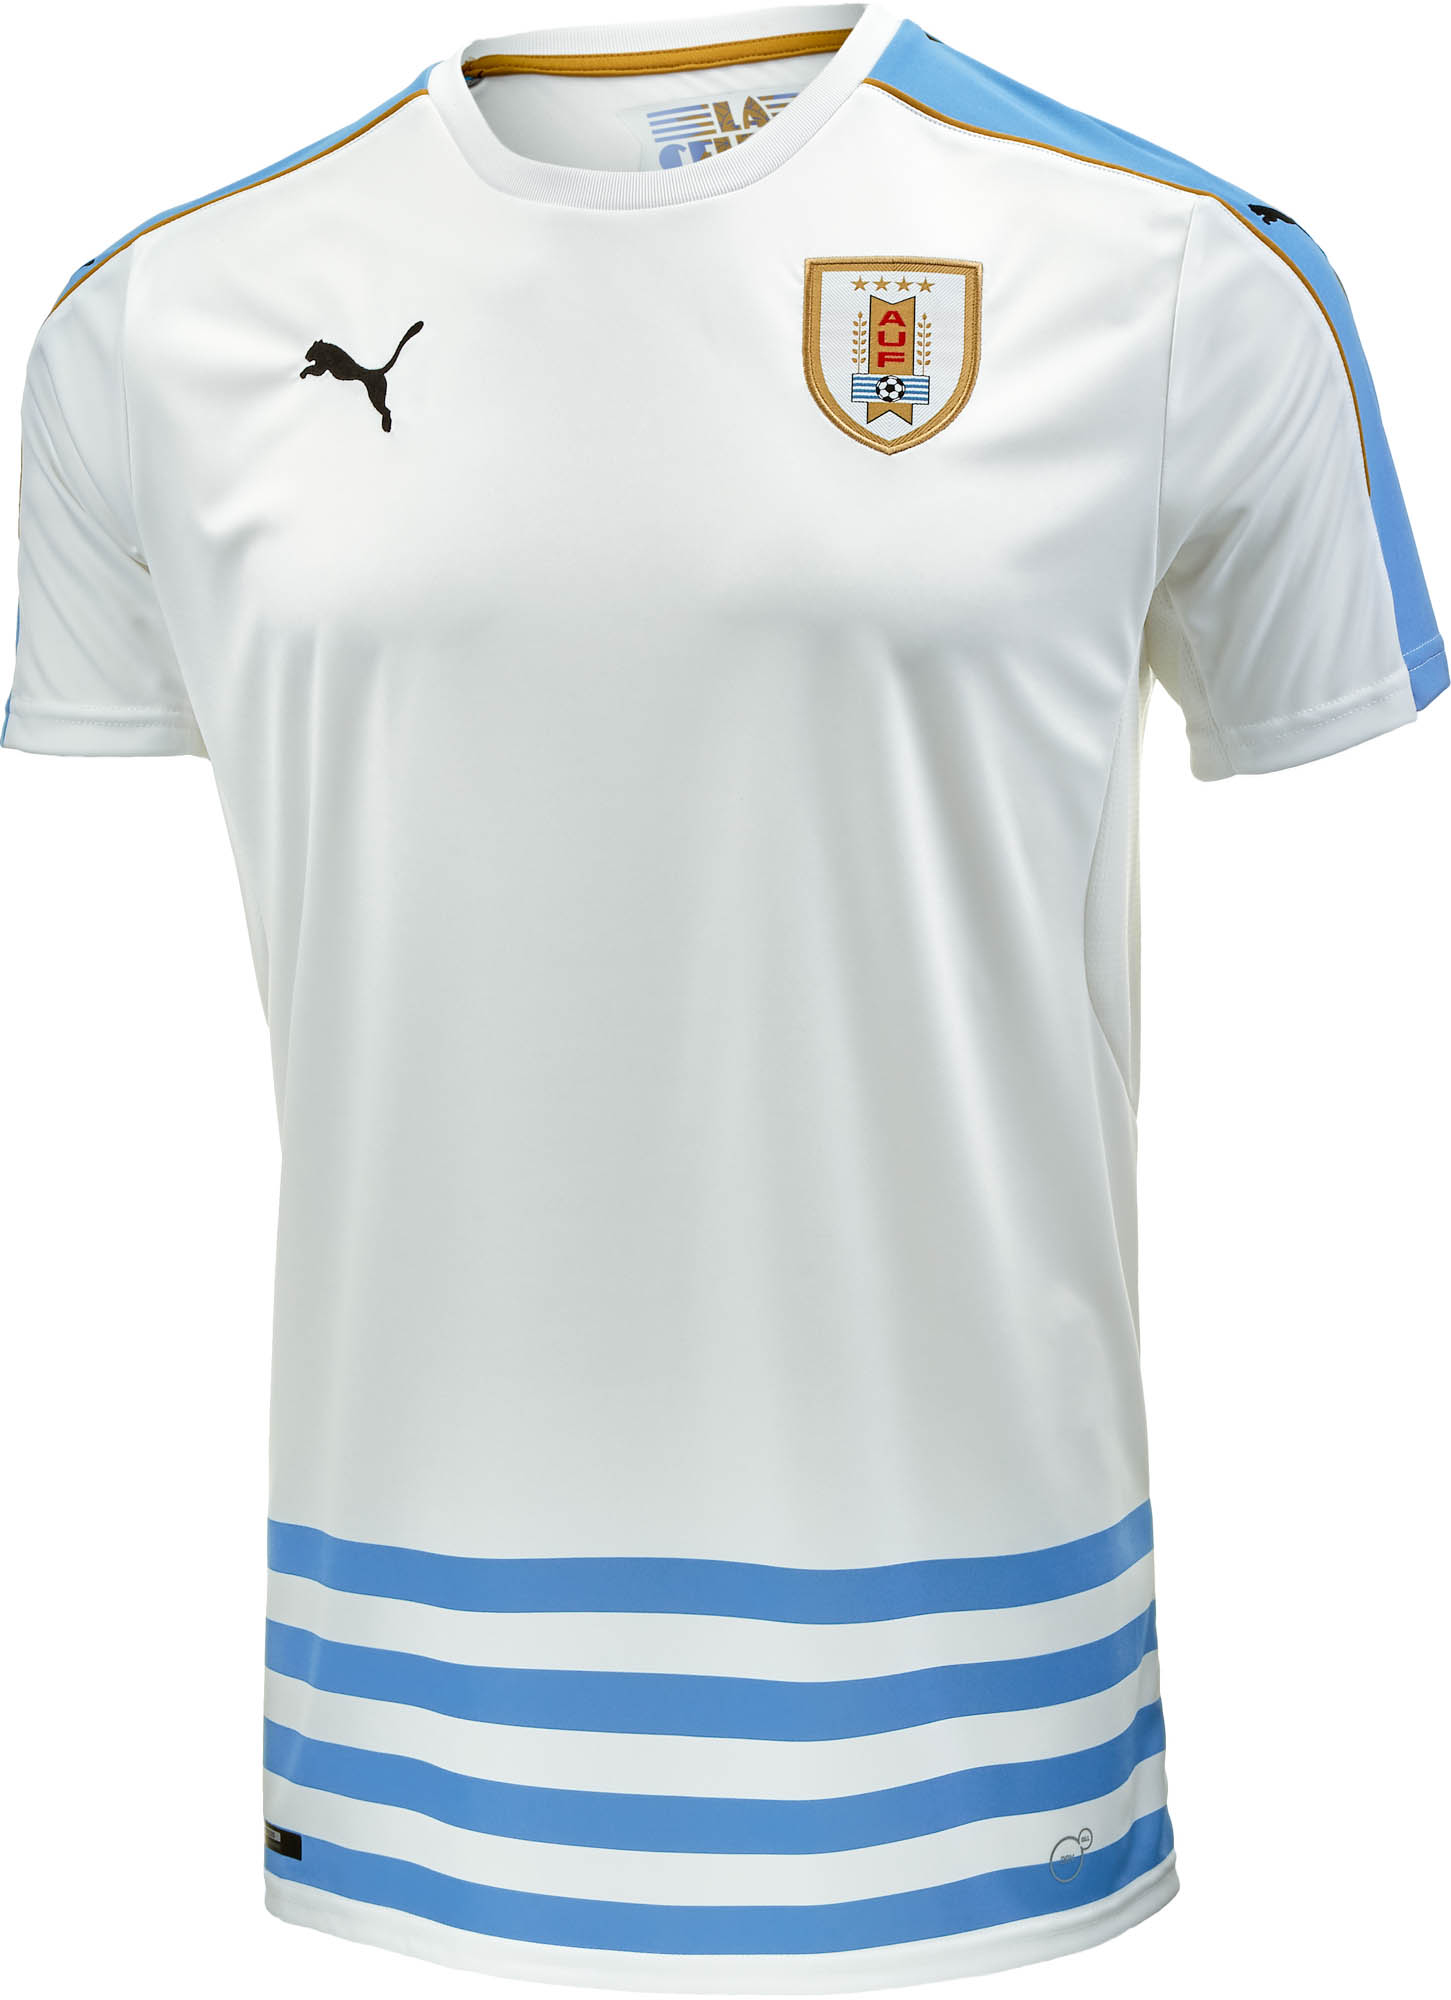 Uruguay Soccer Jerseys